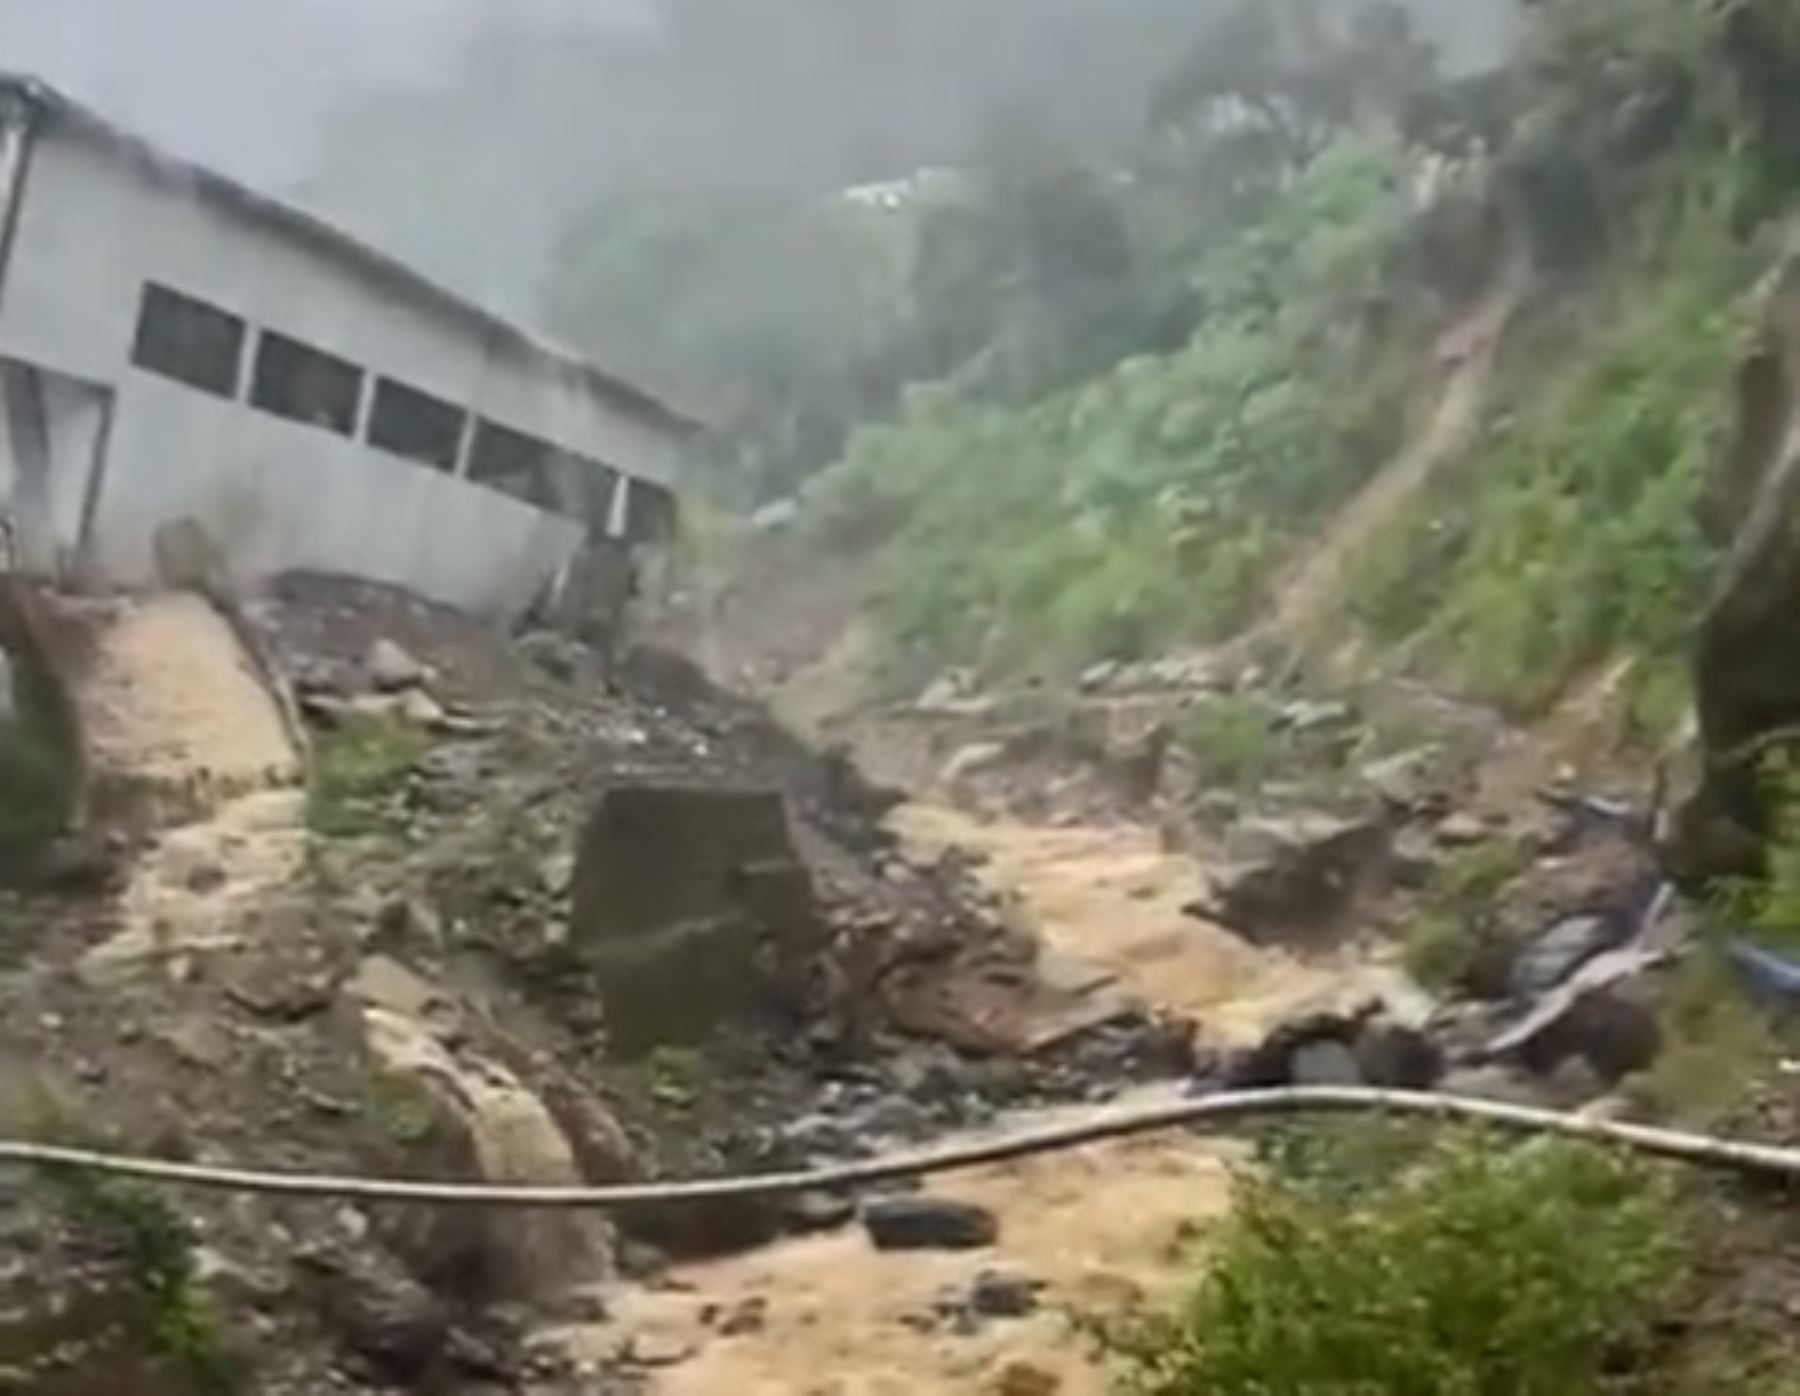 Lluvias intensas y activación de quebradas provocó severos daños en diversas localidades de tres provincias de la sierra de Piura.